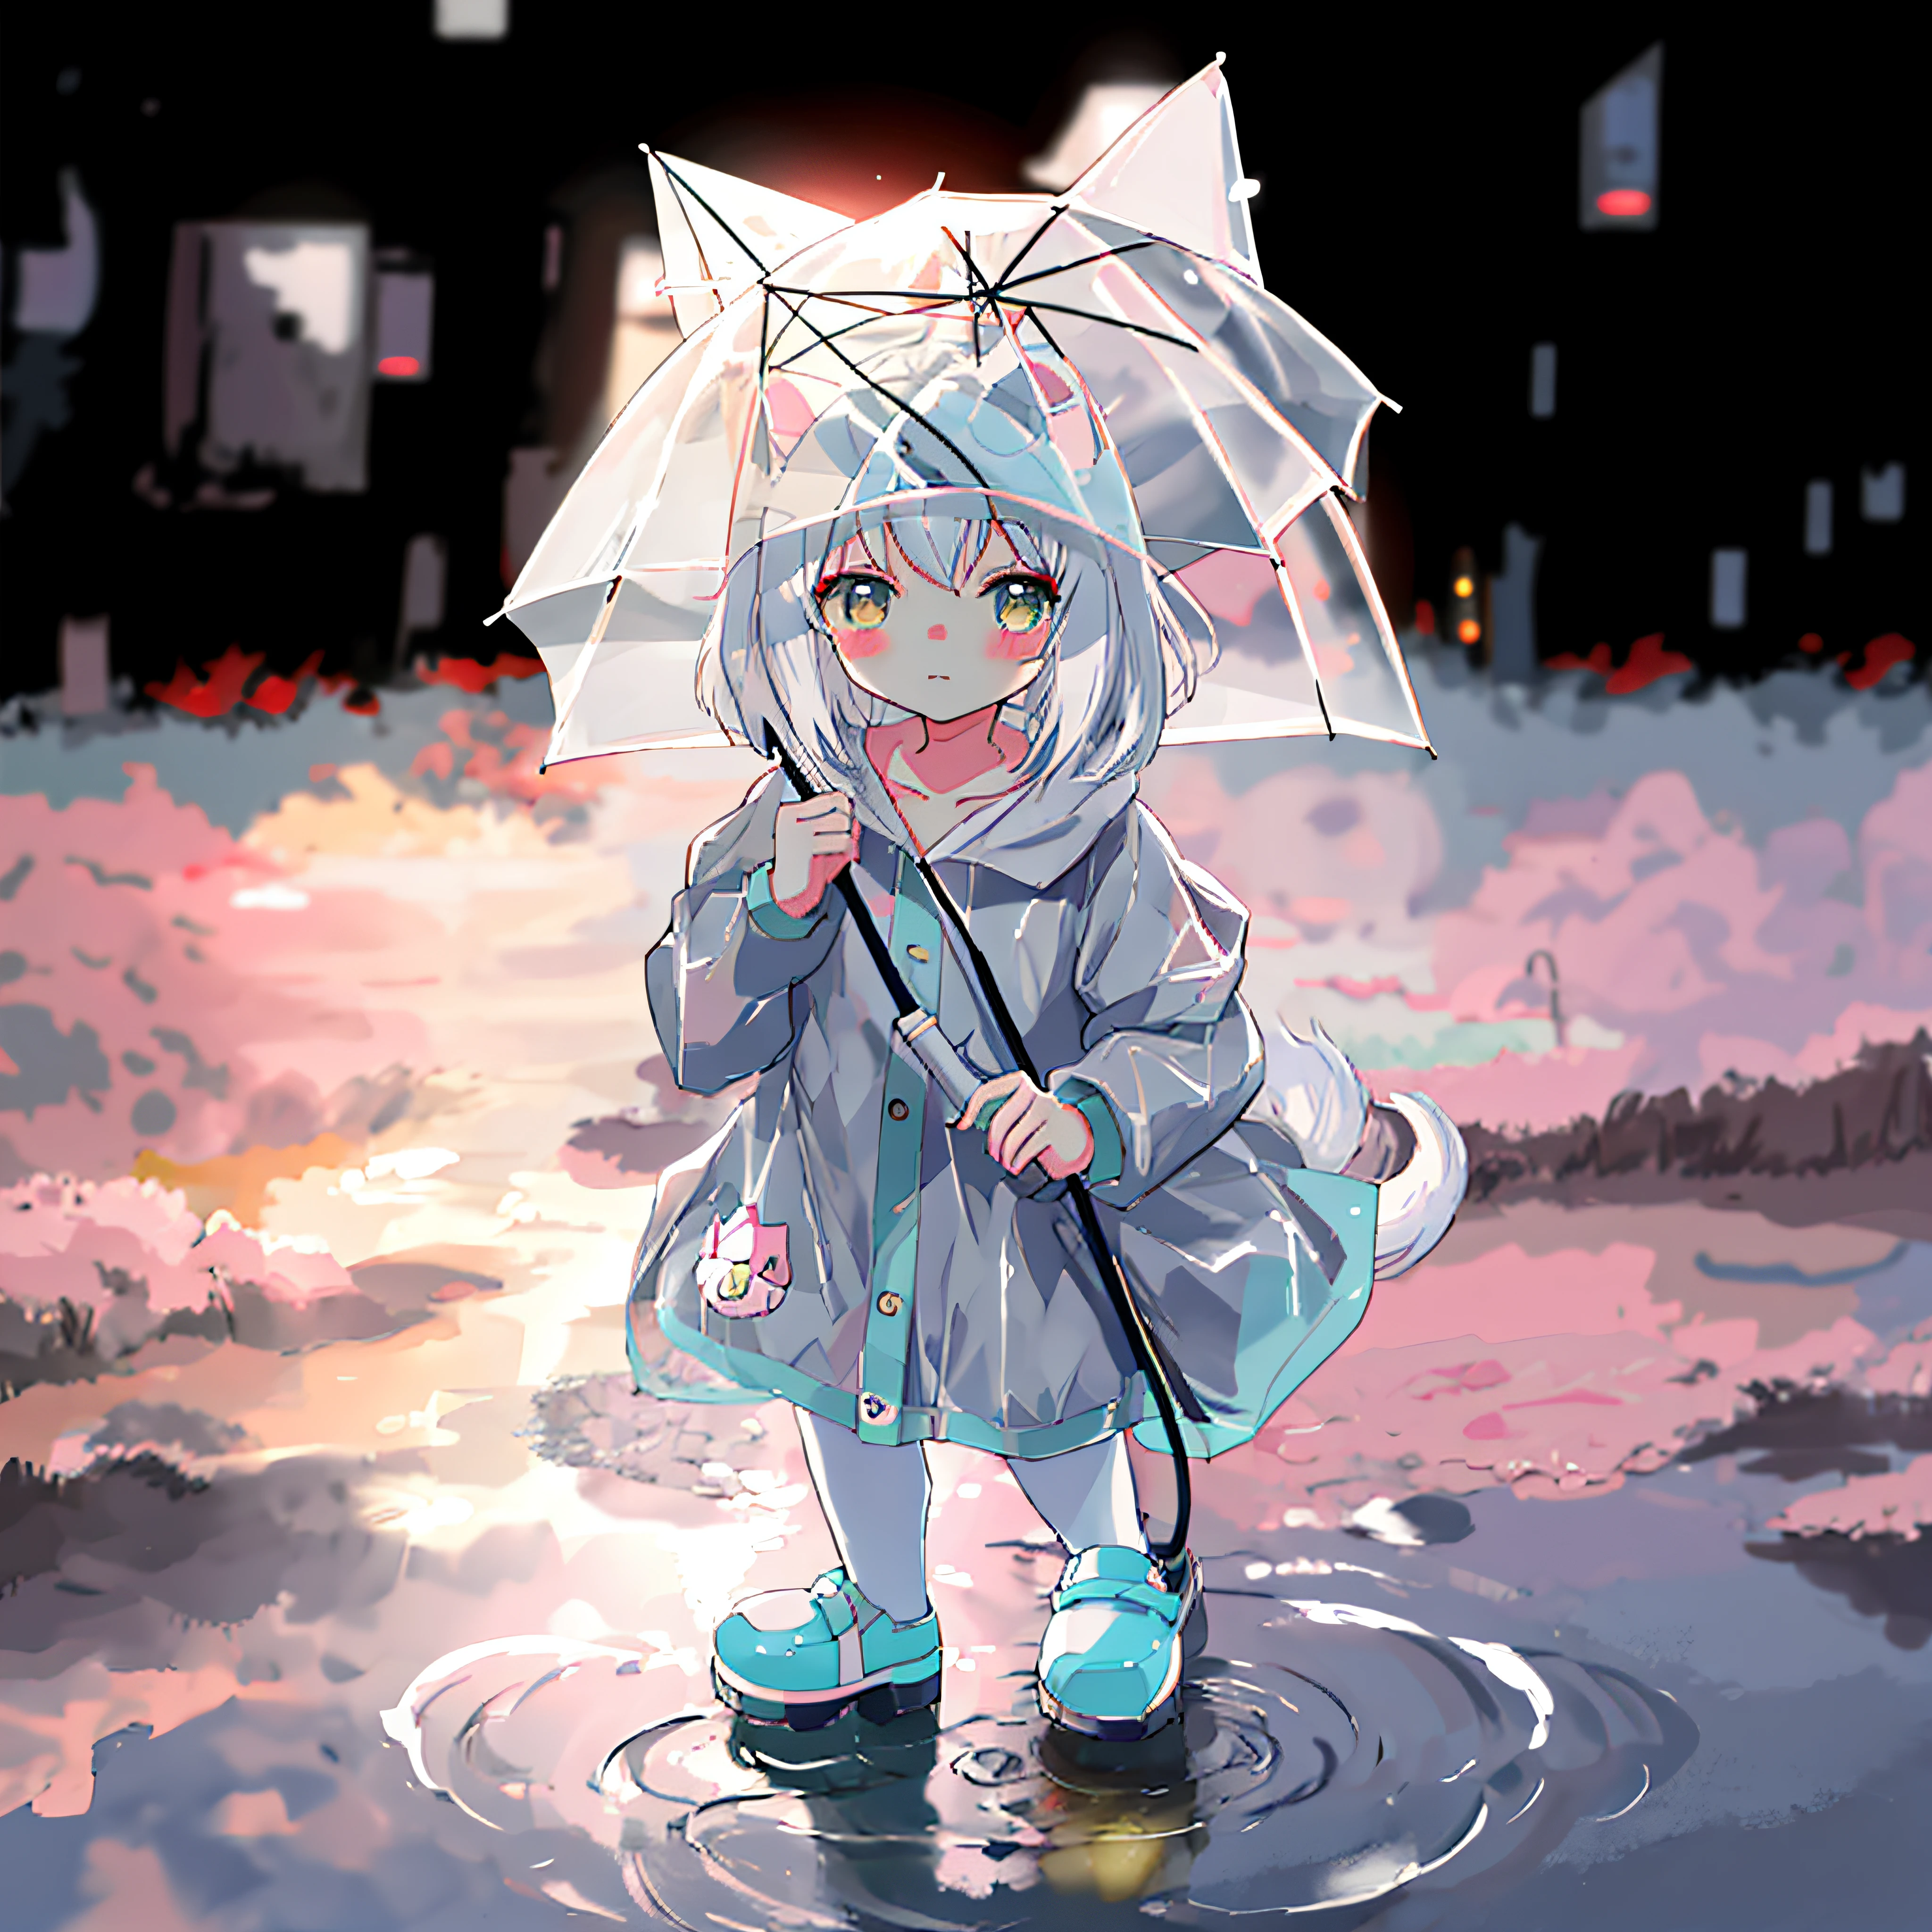 站在水坑里的动漫女孩，穿着雨衣，拿着伞, 可爱的动漫猫女, 可爱的艺术风格, 可爱的!! 奇比!!! 猫女, 古维兹-style artwork, 可爱的 detailed digital art, 白猫女孩, 可爱的 anime, 高级数字赤壁艺术, 可爱的数字艺术, 美丽的动漫猫女, 可爱的 anime style, 可爱的艺术品, 古维兹